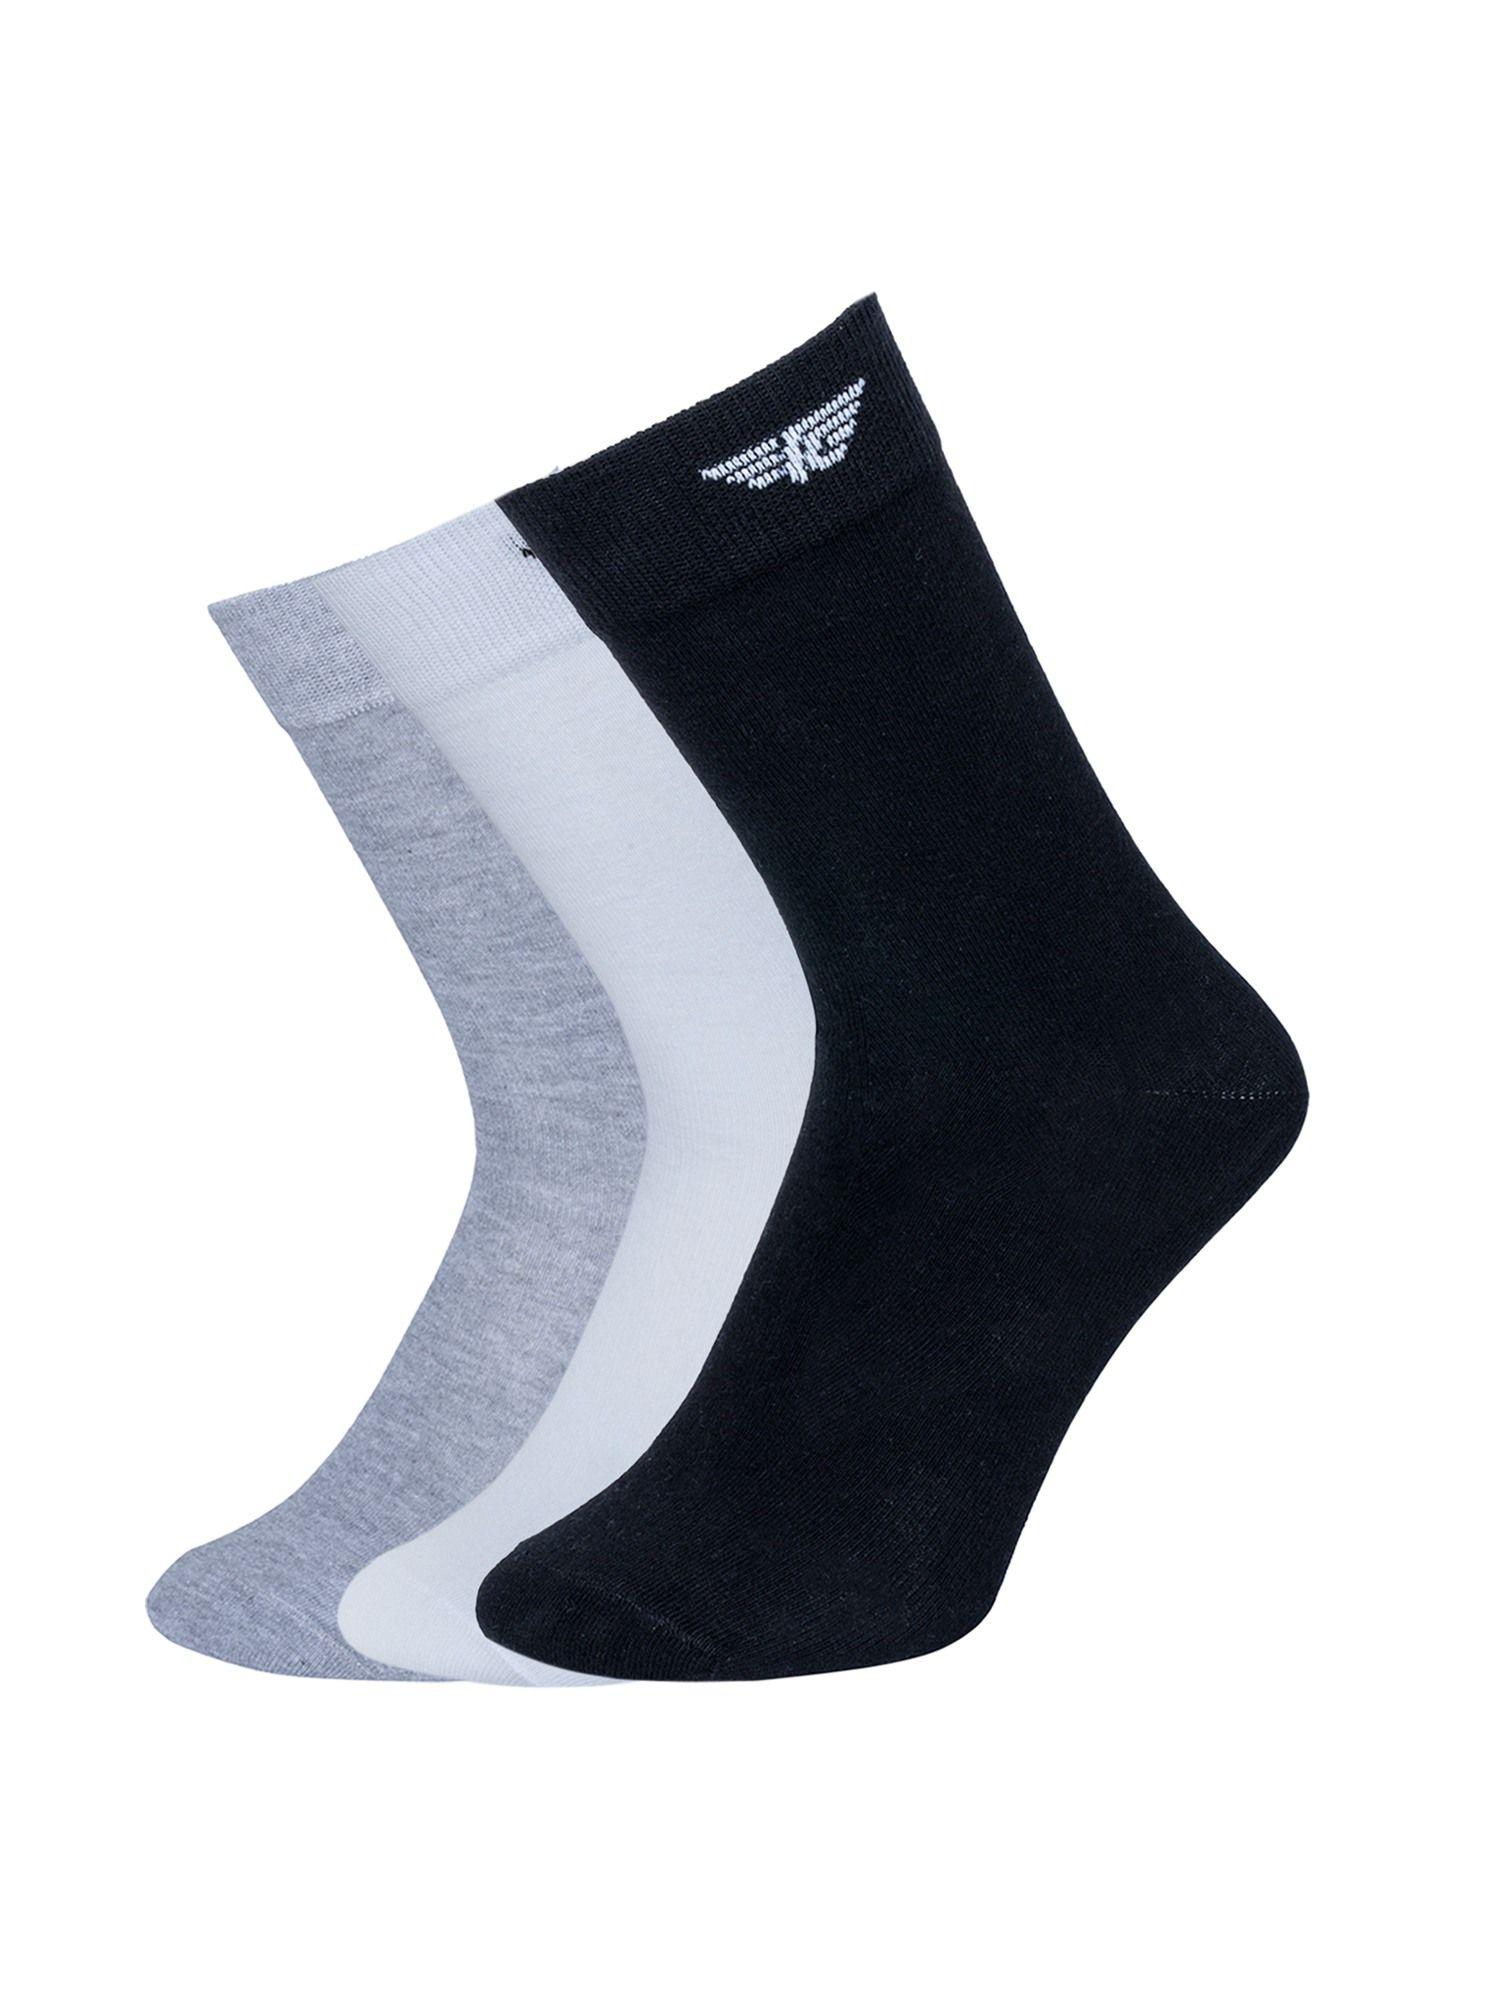 men-multi-color-solid-above-ankle-socks-(pack-of-3)